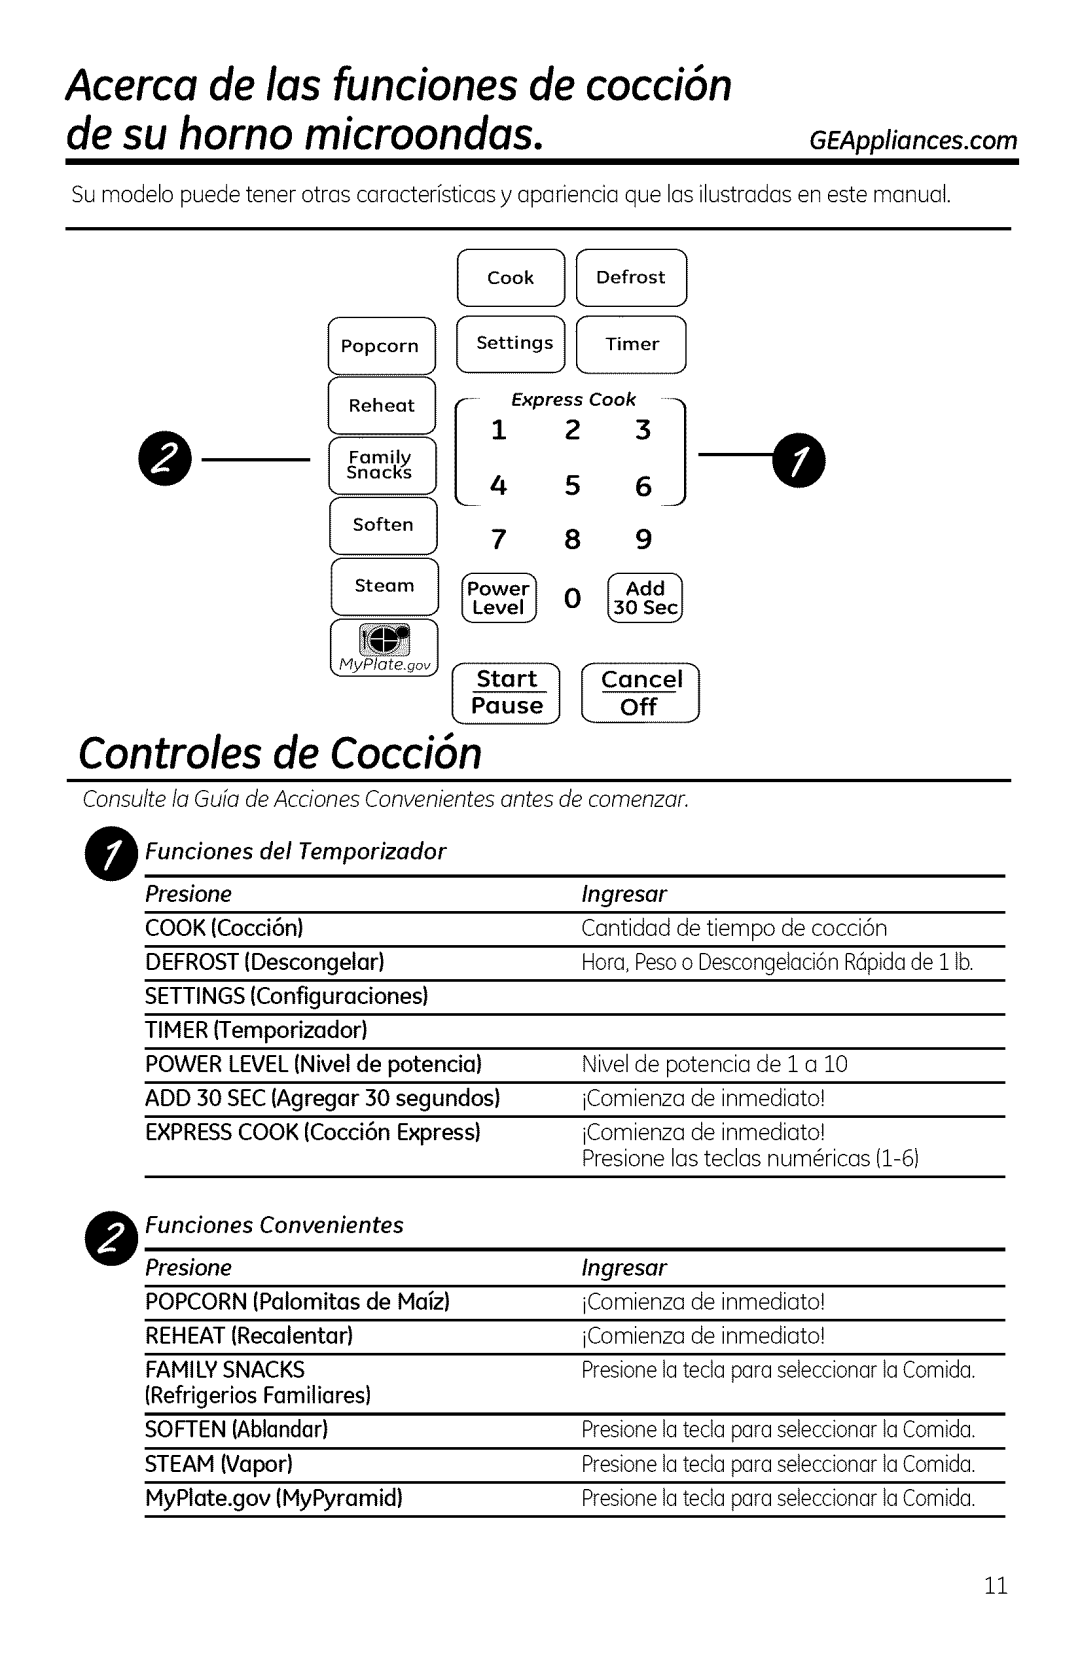 GE DVM1950 manual Acerca de las funciones de cocci6n, Controles de Cocci6n, de su homo microondas, GEAppliances.com, eso--o 